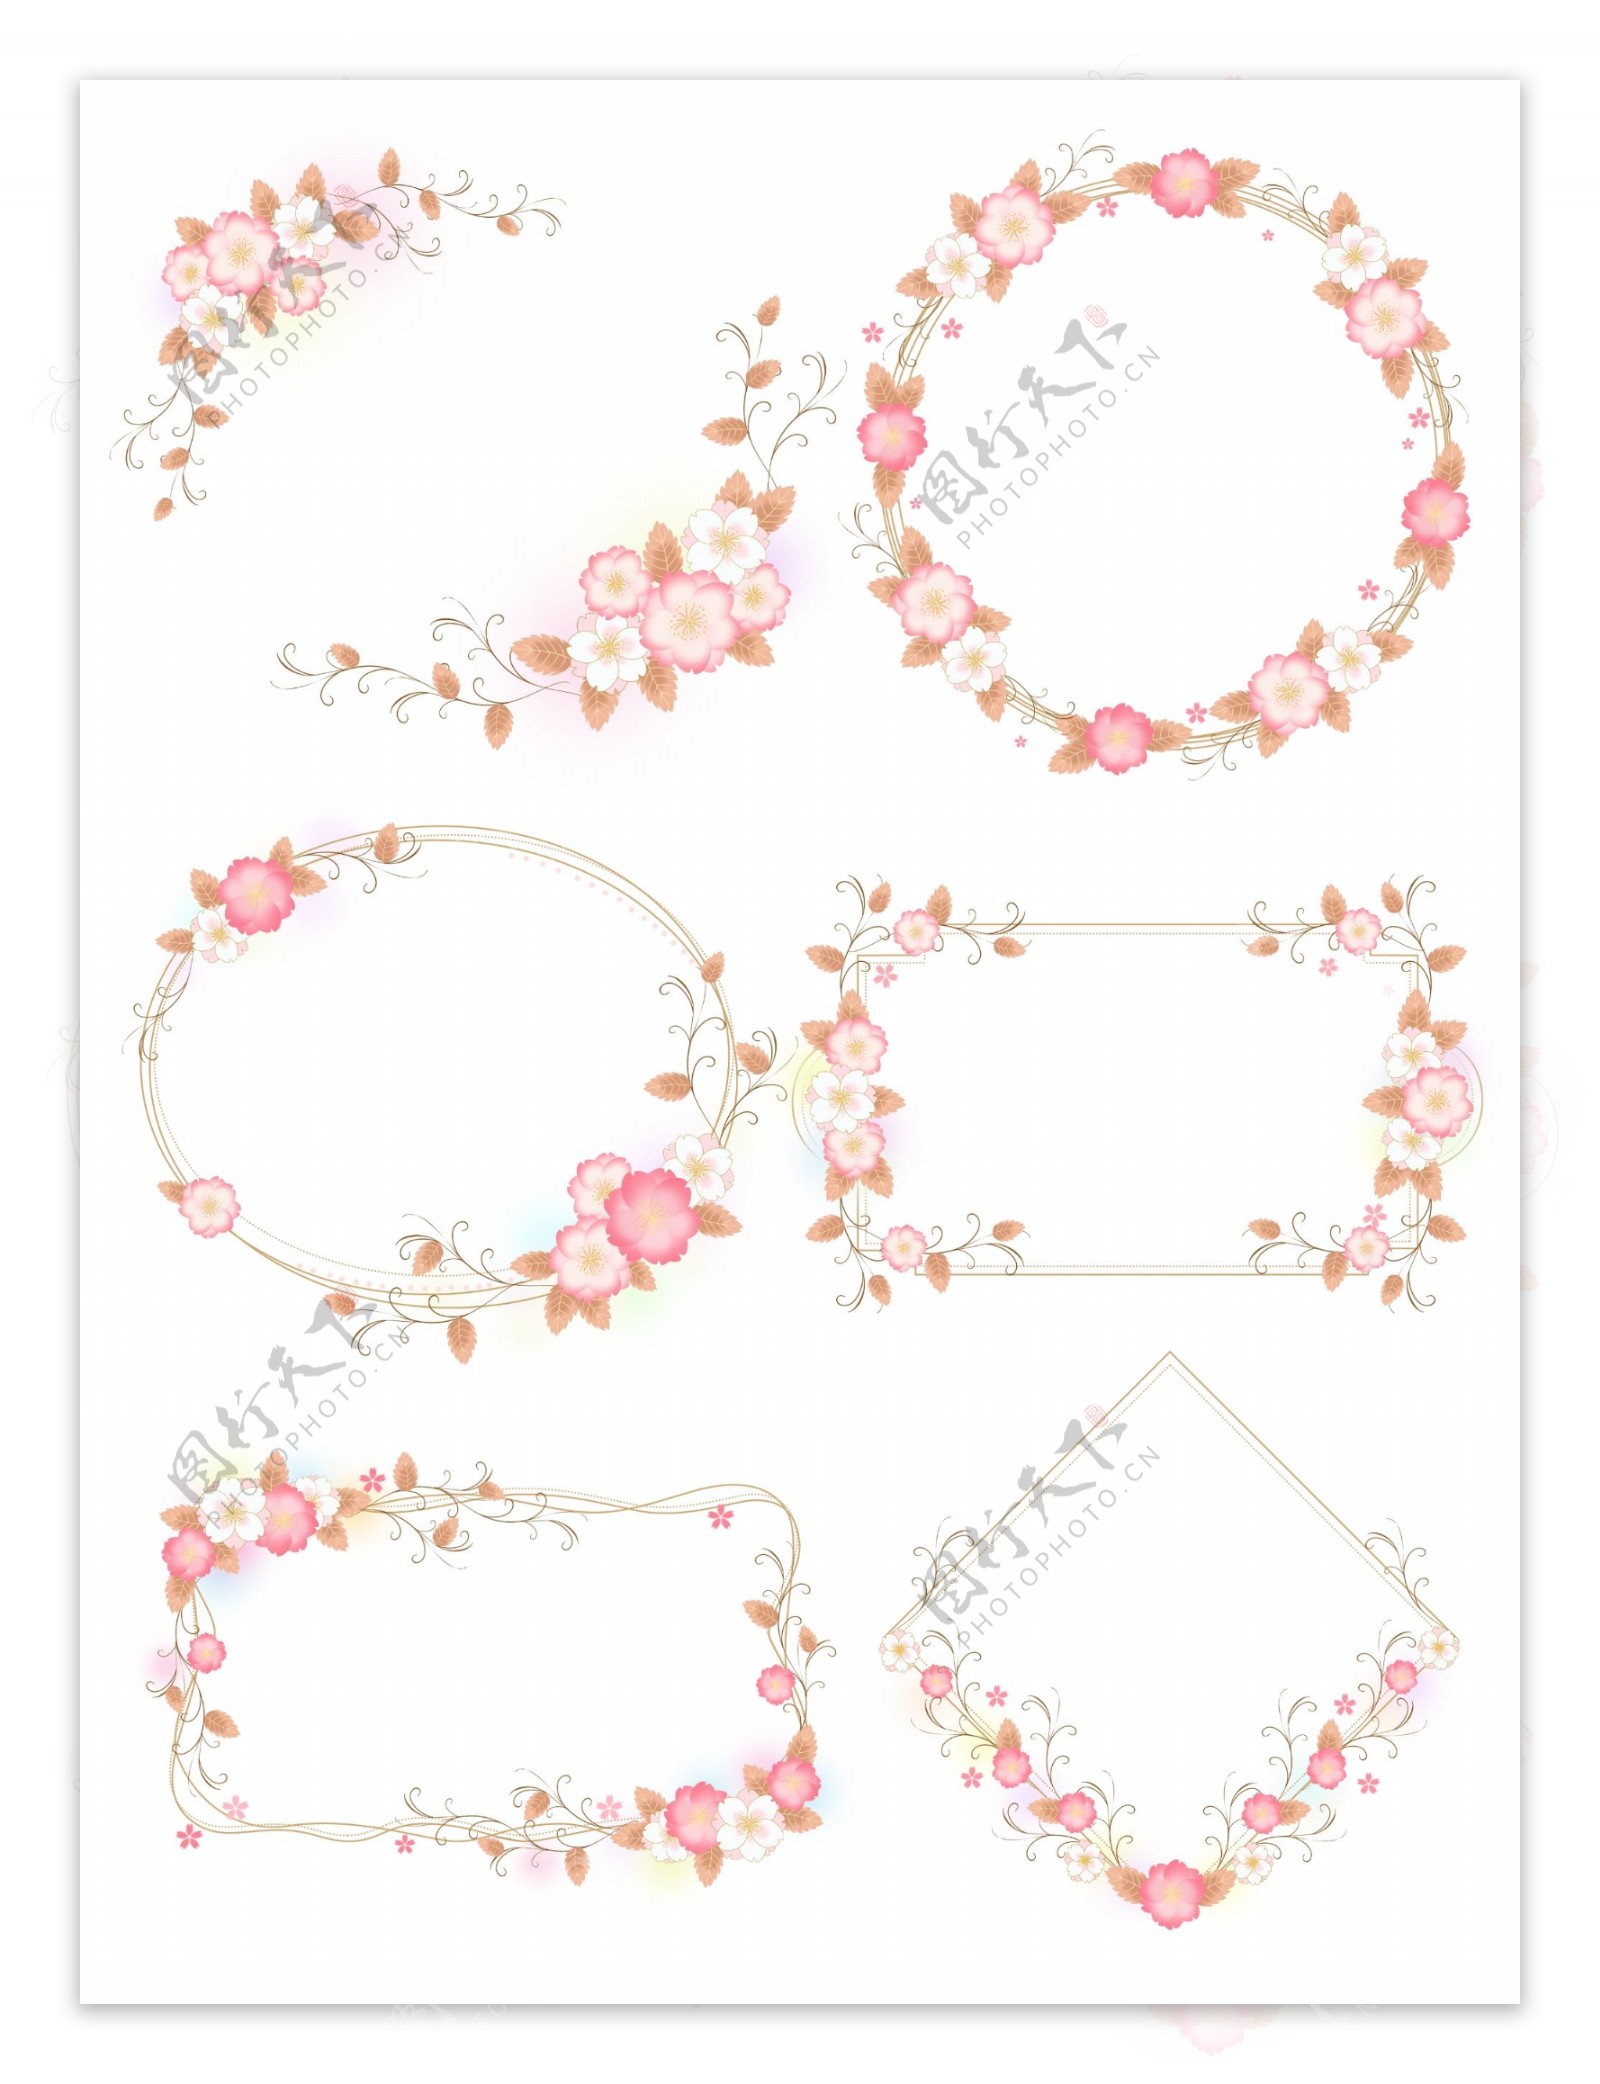 手绘清新卡通樱花浪漫欧式花卉植物边框粉色